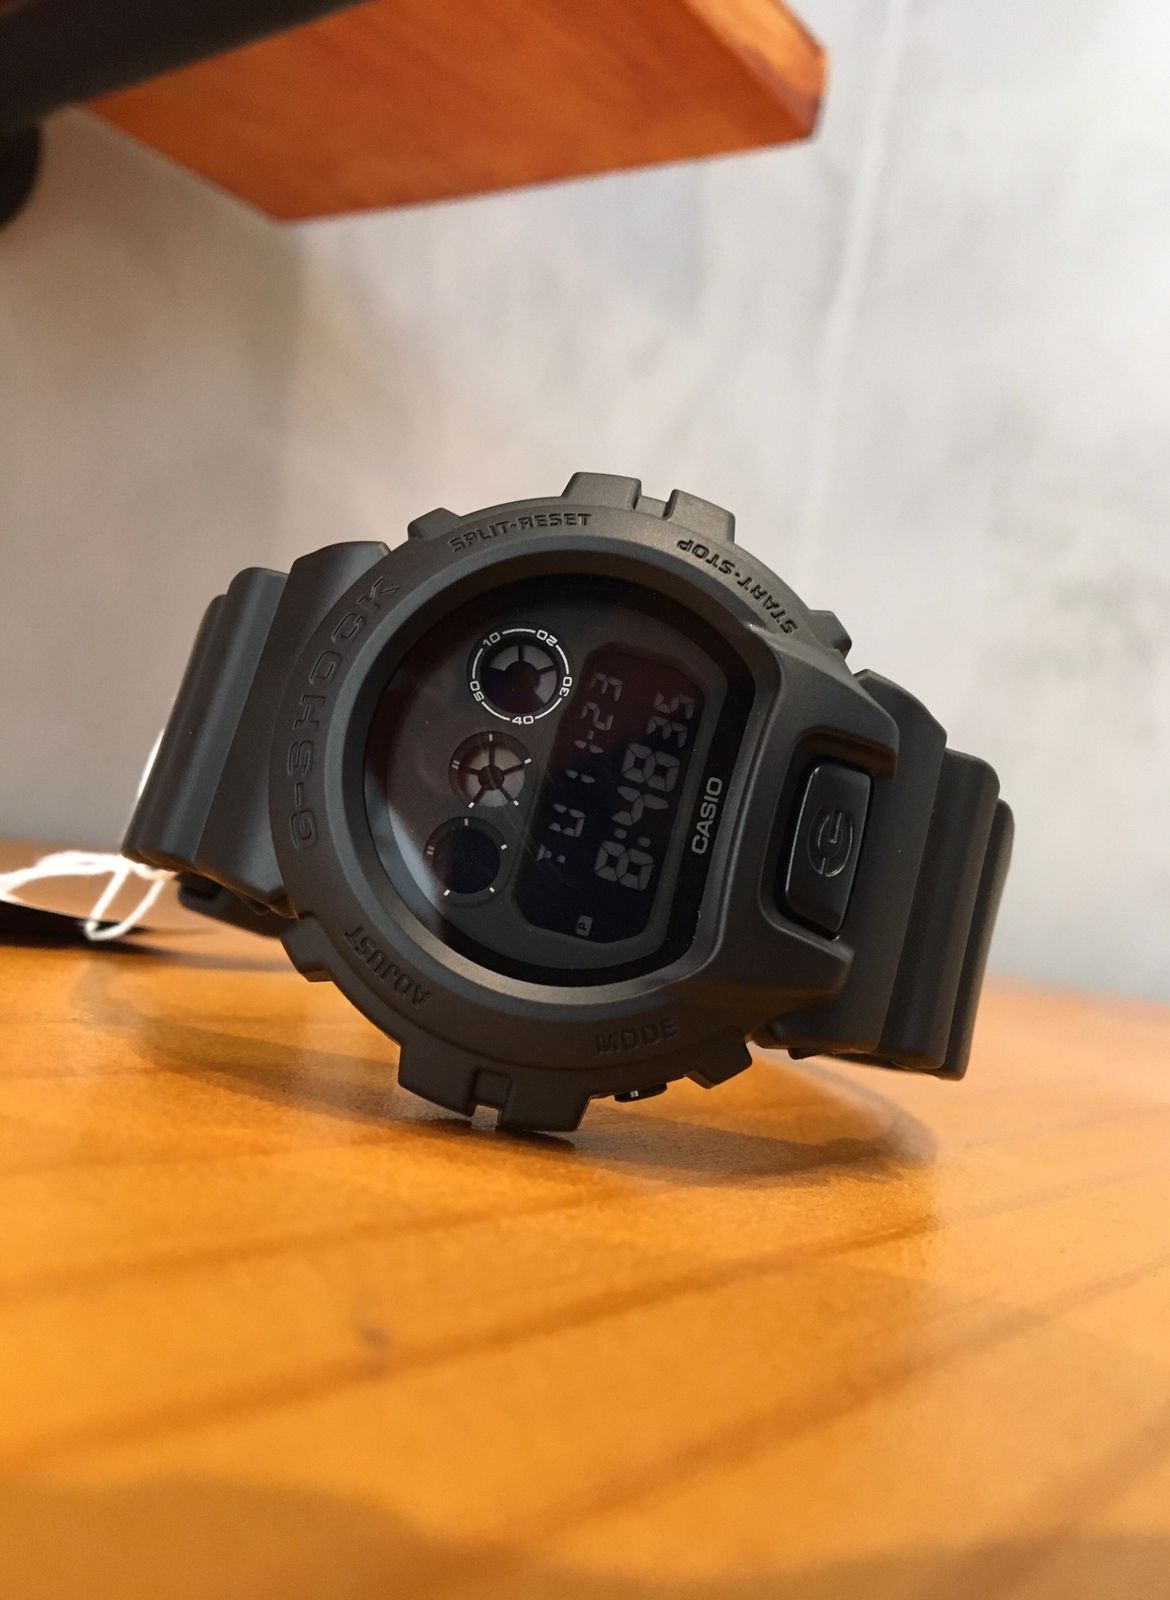 Relógio Casio G-Shock Masculino Preto Digital Esportivo em Poliuretano Á Prova d'água DW-6900BB 1DR